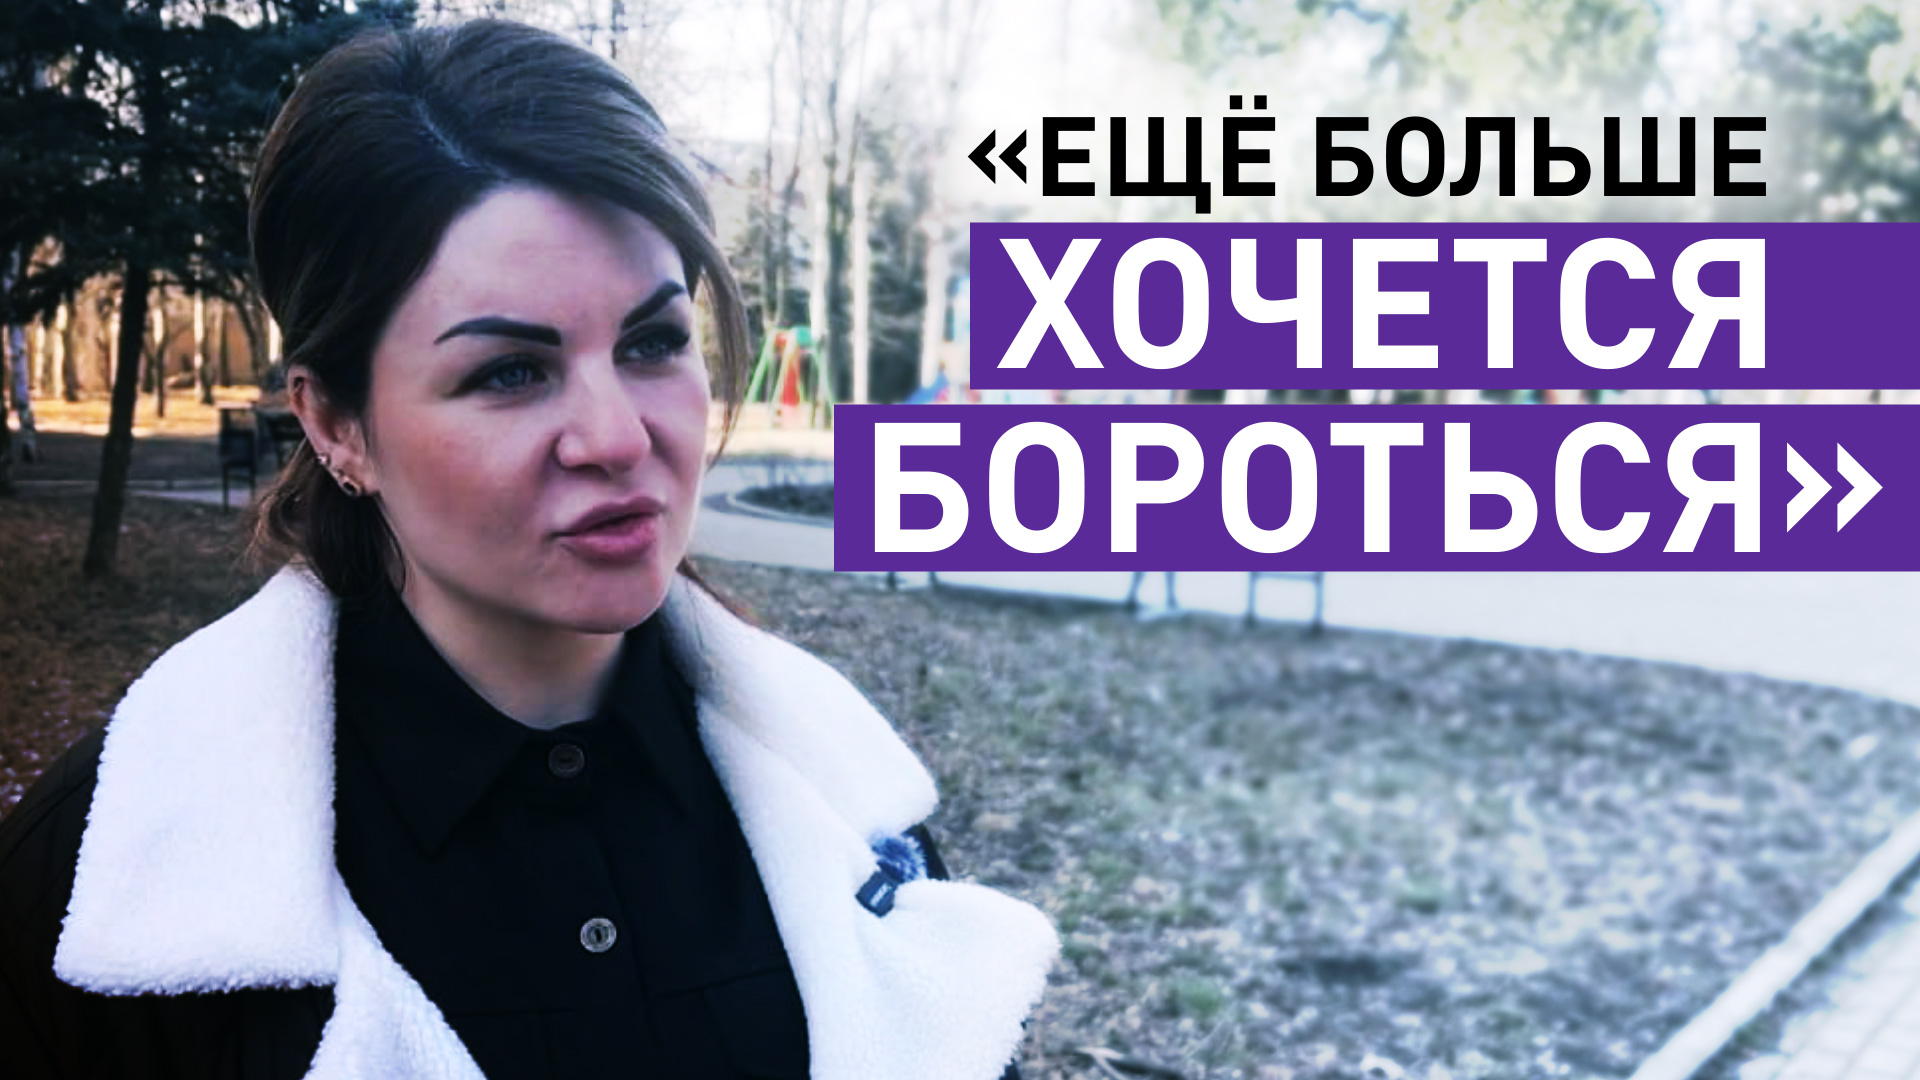 «Рискуют и всё равно хотят сделать этот выбор»: почему жители Донецка идут на голосование